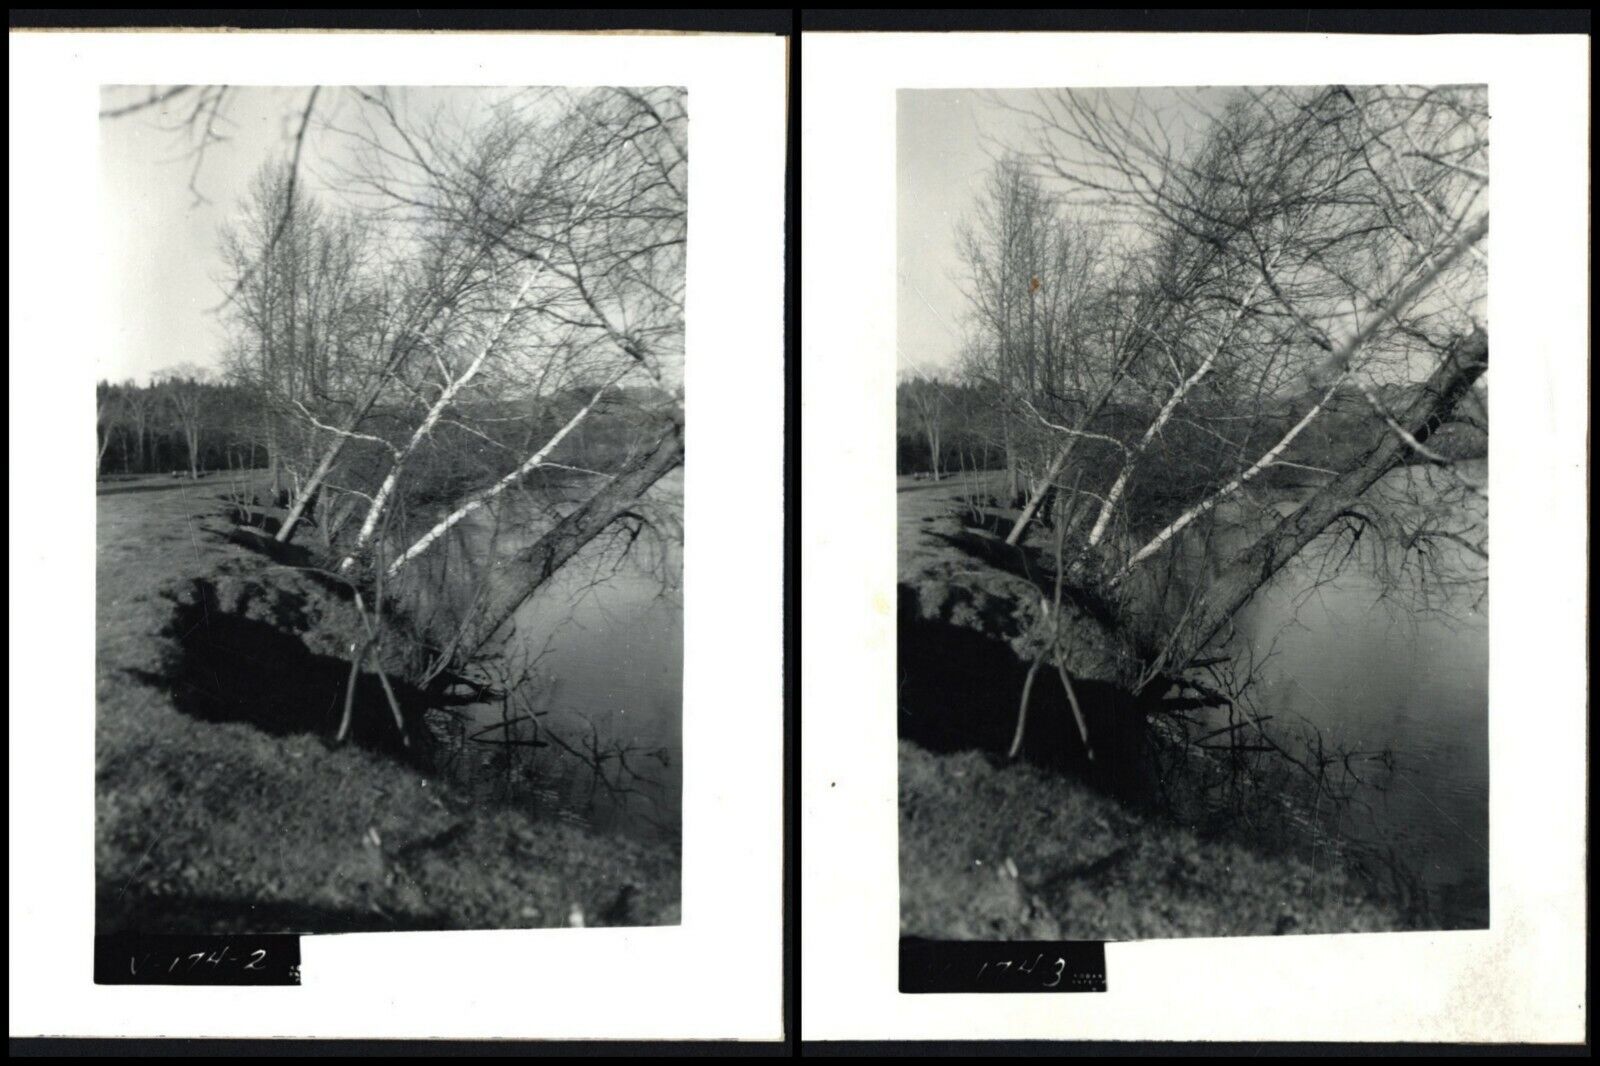 H. CORLISS  FARM - Lemington, VERMONT - 2 PHOTOGRAPHS - CT RIVER EROSION - 1959